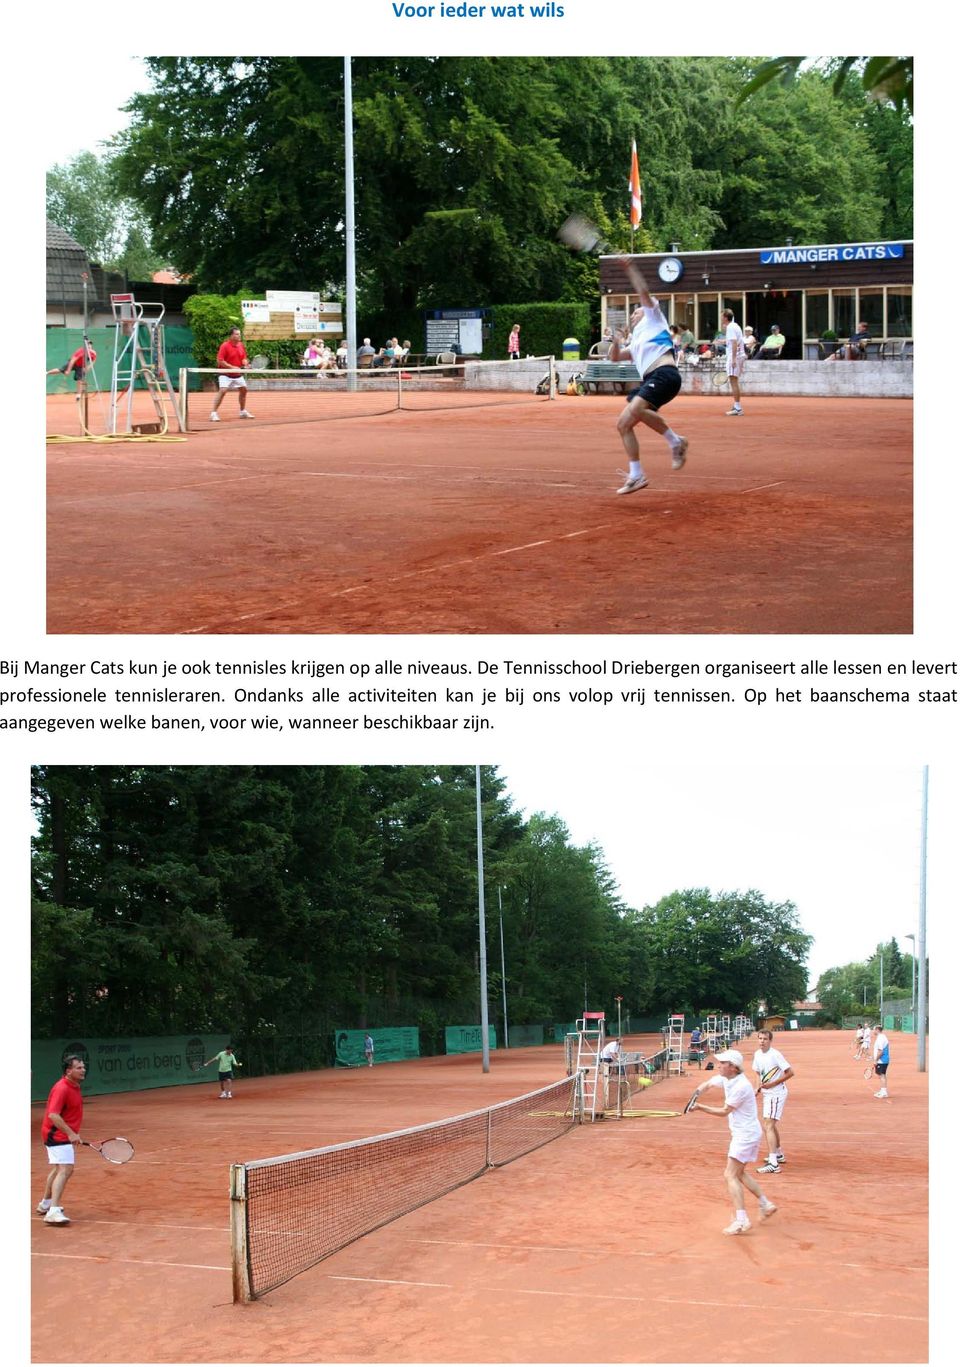 De Tennisschool Driebergen organiseert alle lessen en levert professionele